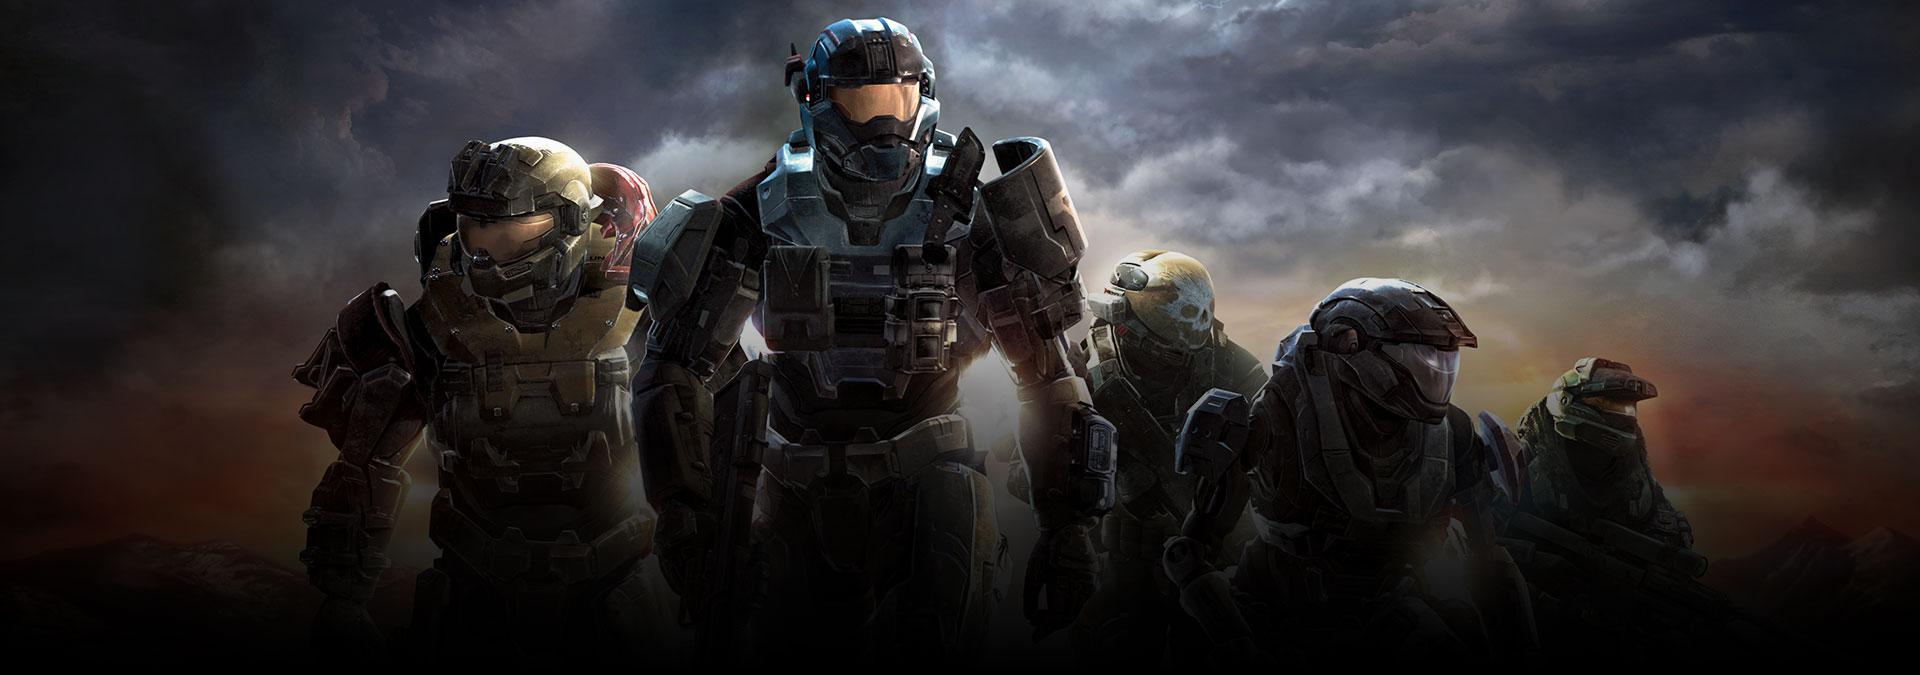 Halo: Reach y Fable 3, retrocompatibles con Xbox One - MeriStation